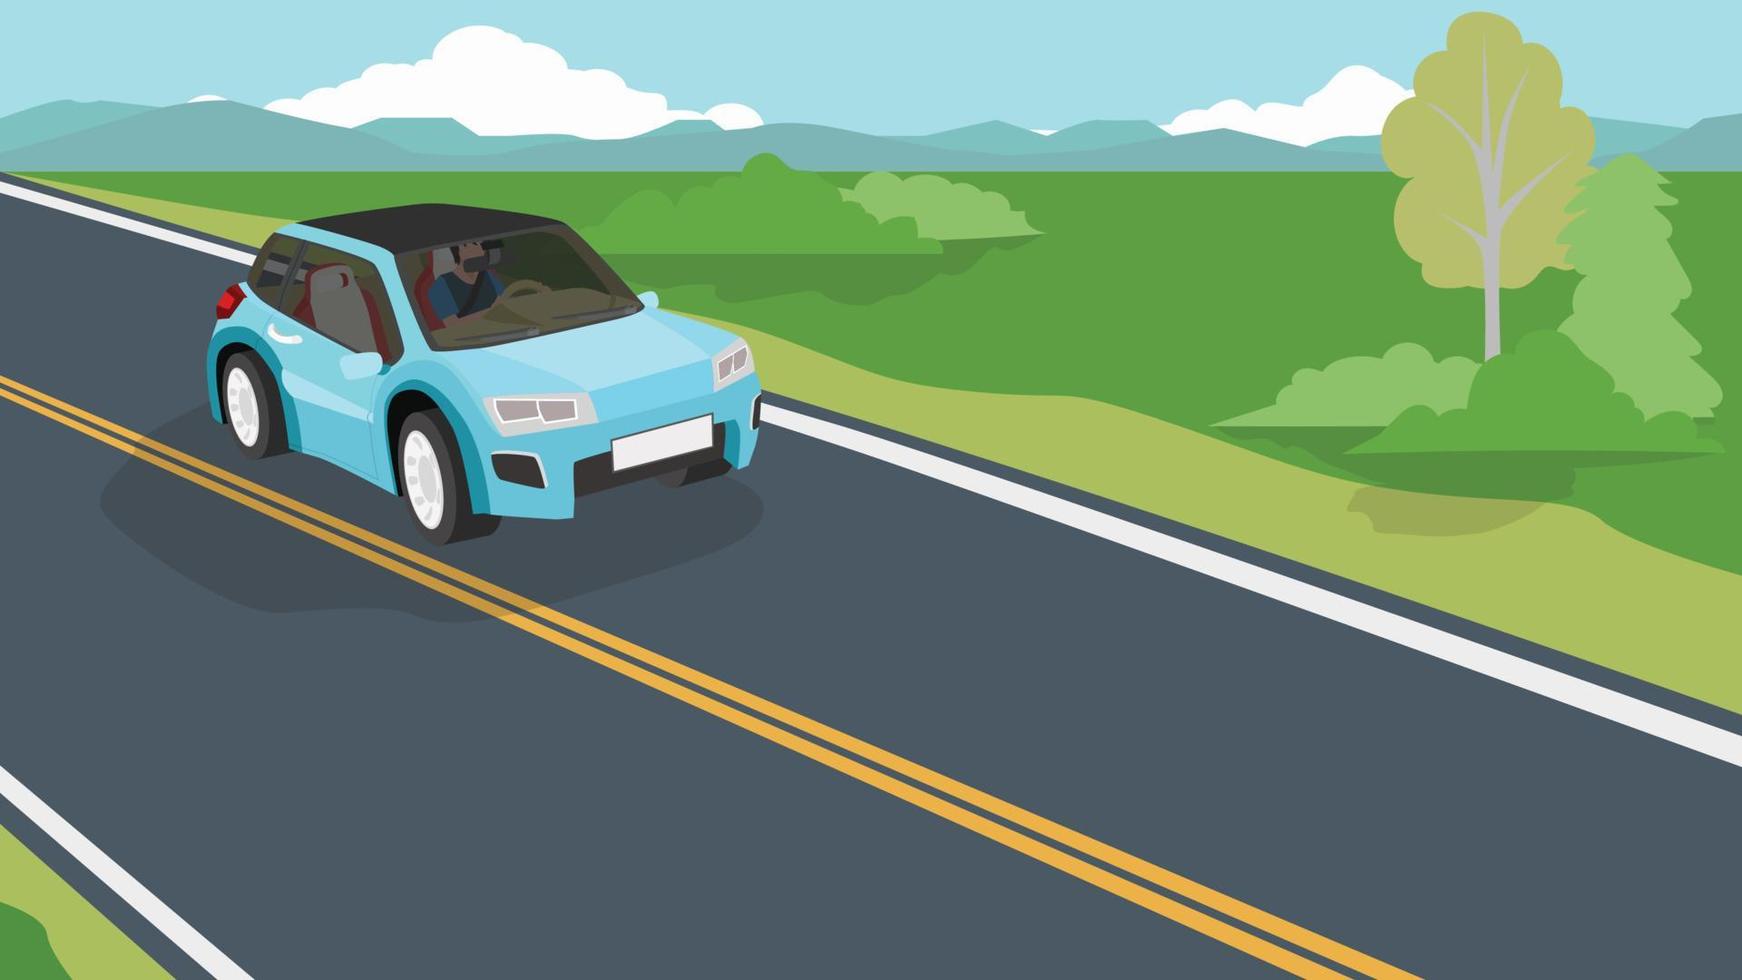 körande man inuti elektriska fordon blå färg på asfaltväg. reseresa på upplandet. gräsmark miljö och stora höga berg bakgrund under blå himmel. vektor